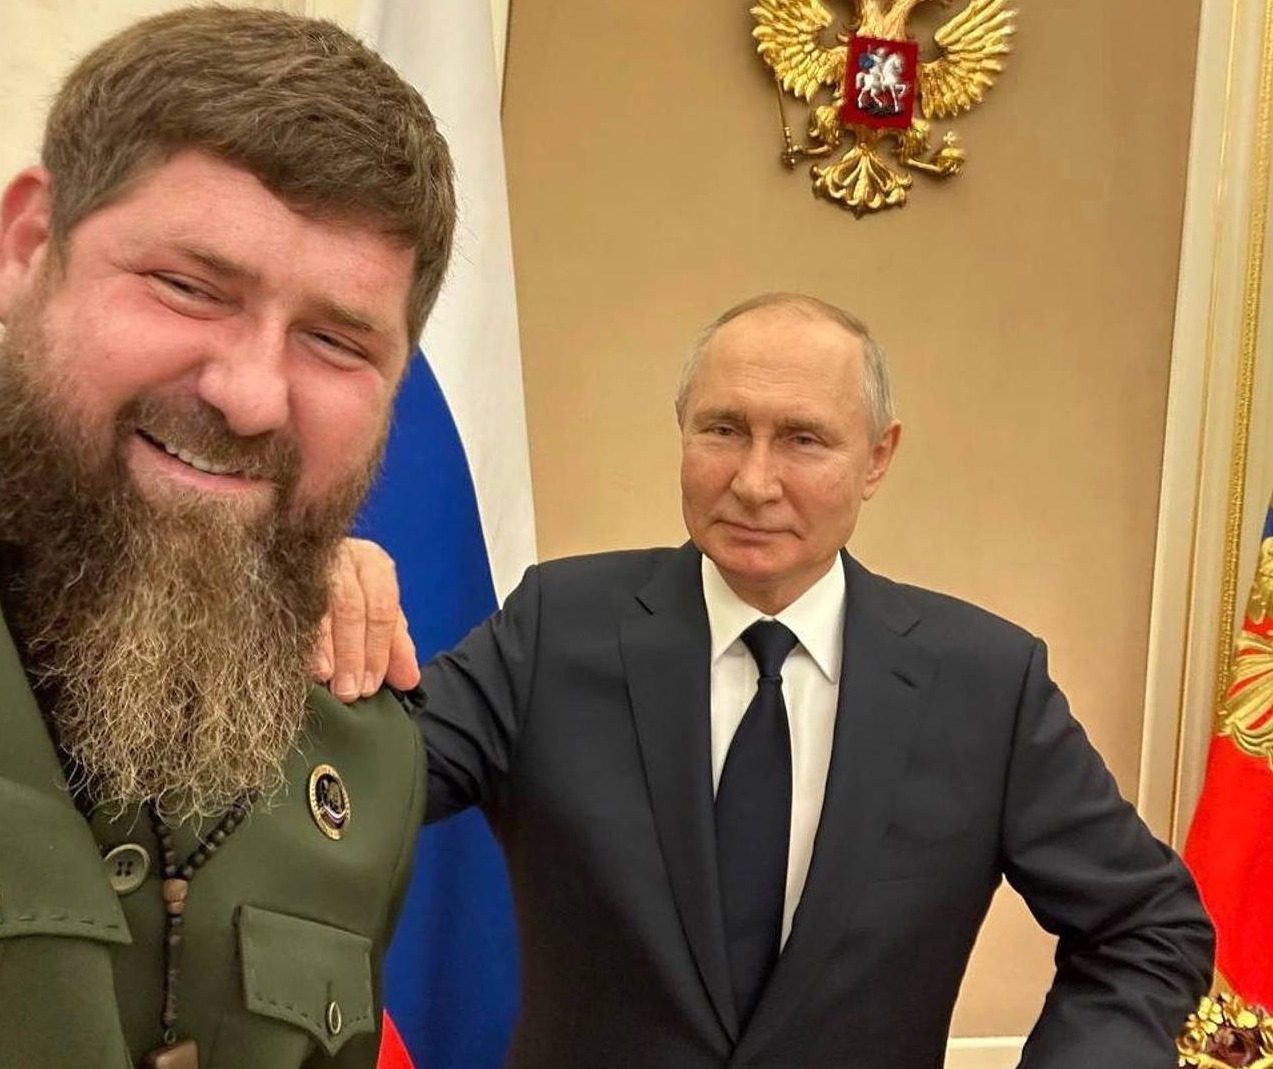 Руки уже дергаются: Кадыров впал в истерику на встрече с Путиным ➤ Prozoro.net.ua